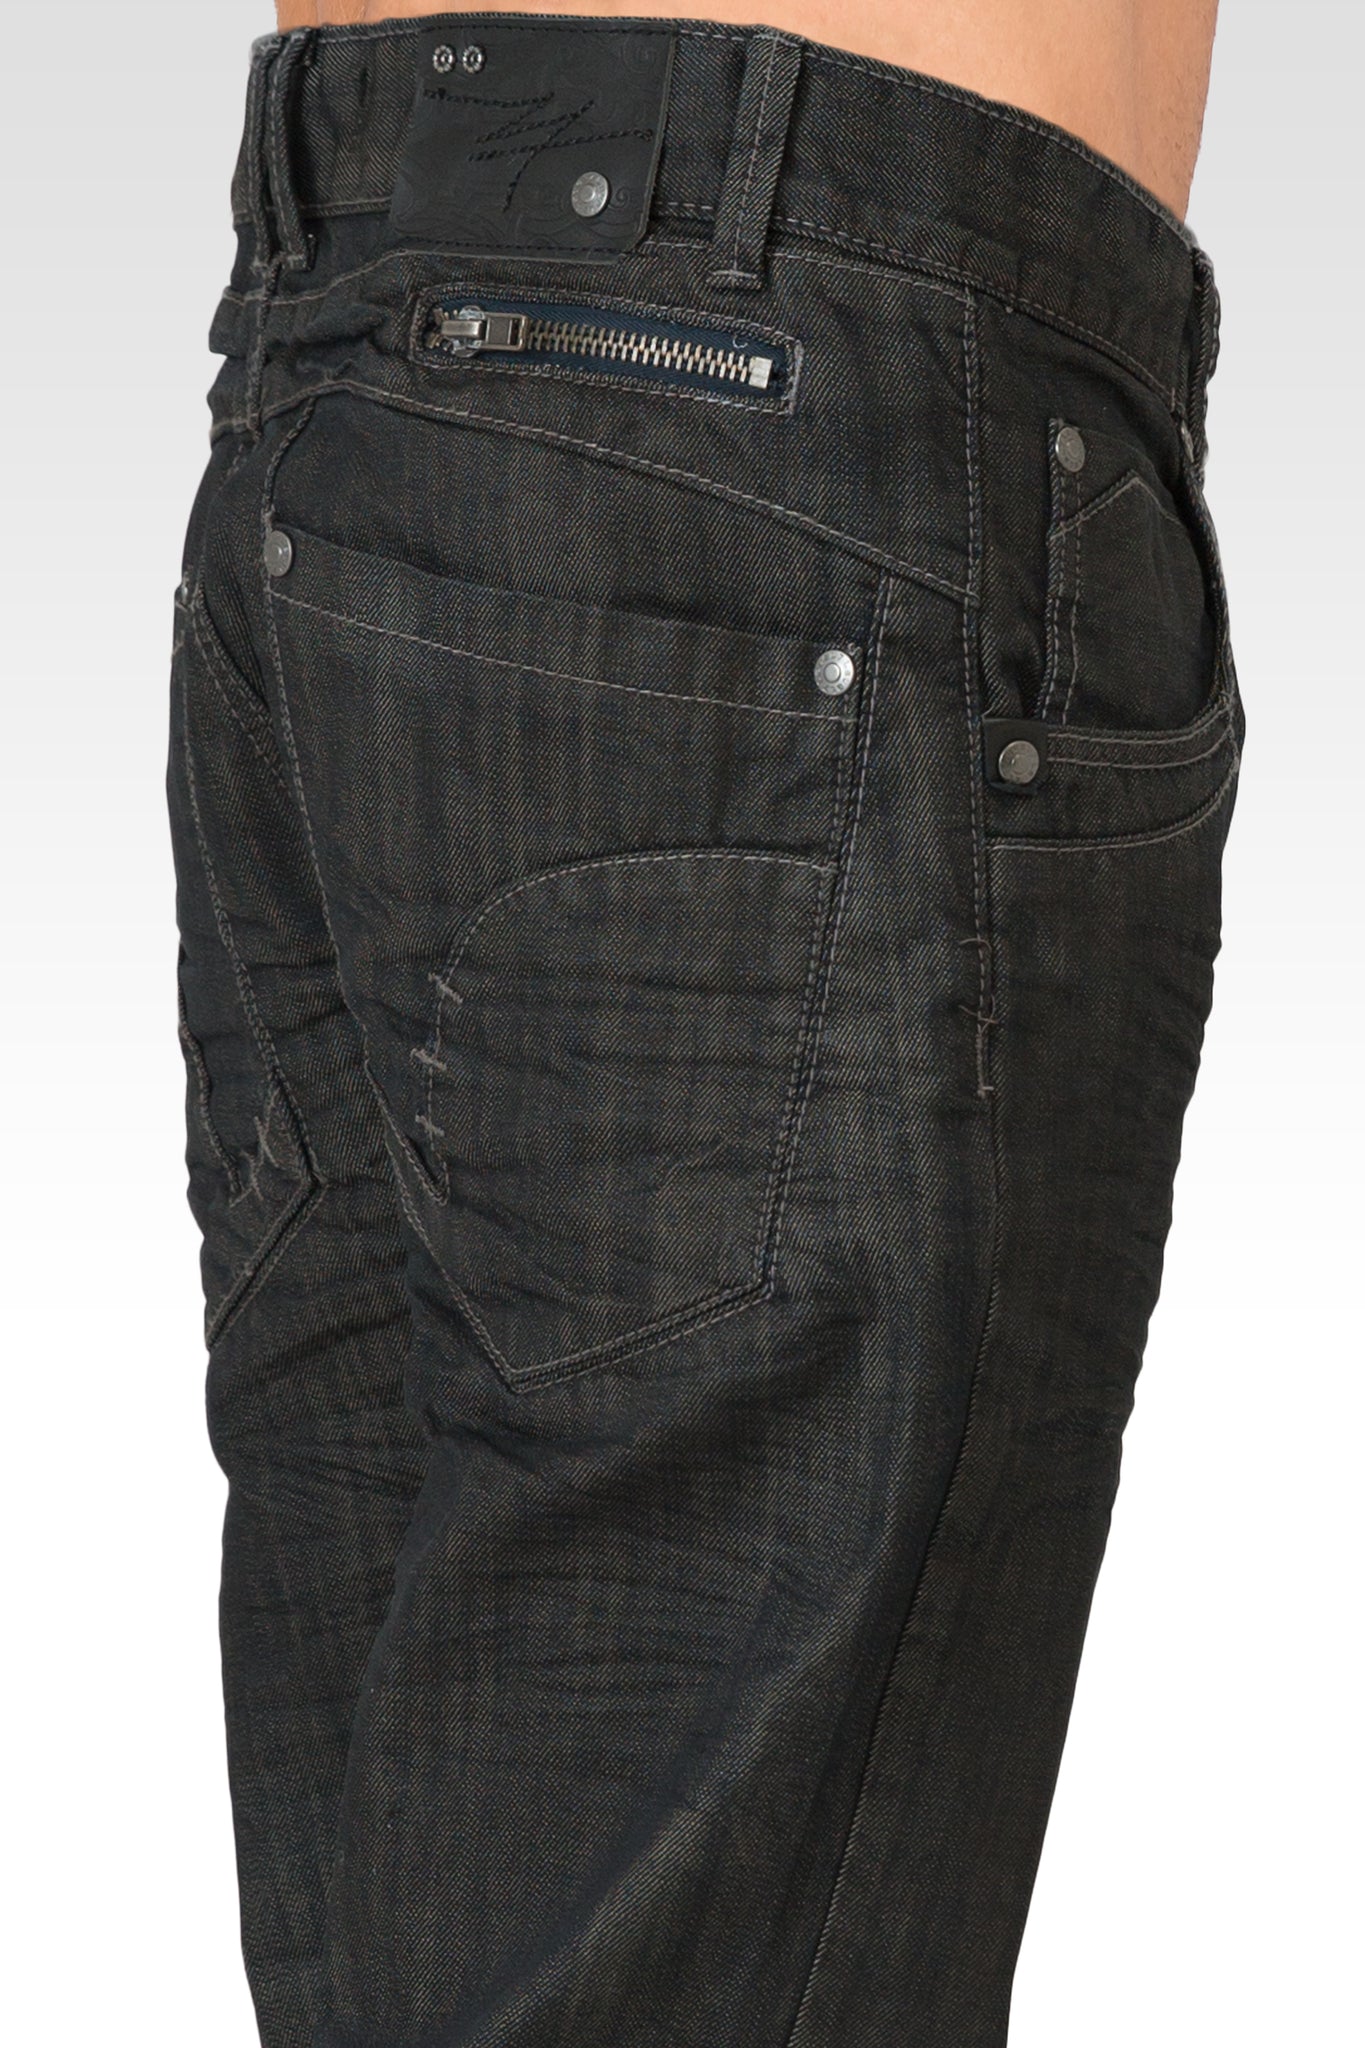 Men's Relaxed Straight Dark Blue Oil Stain Zipper Pocket Denim Jeans